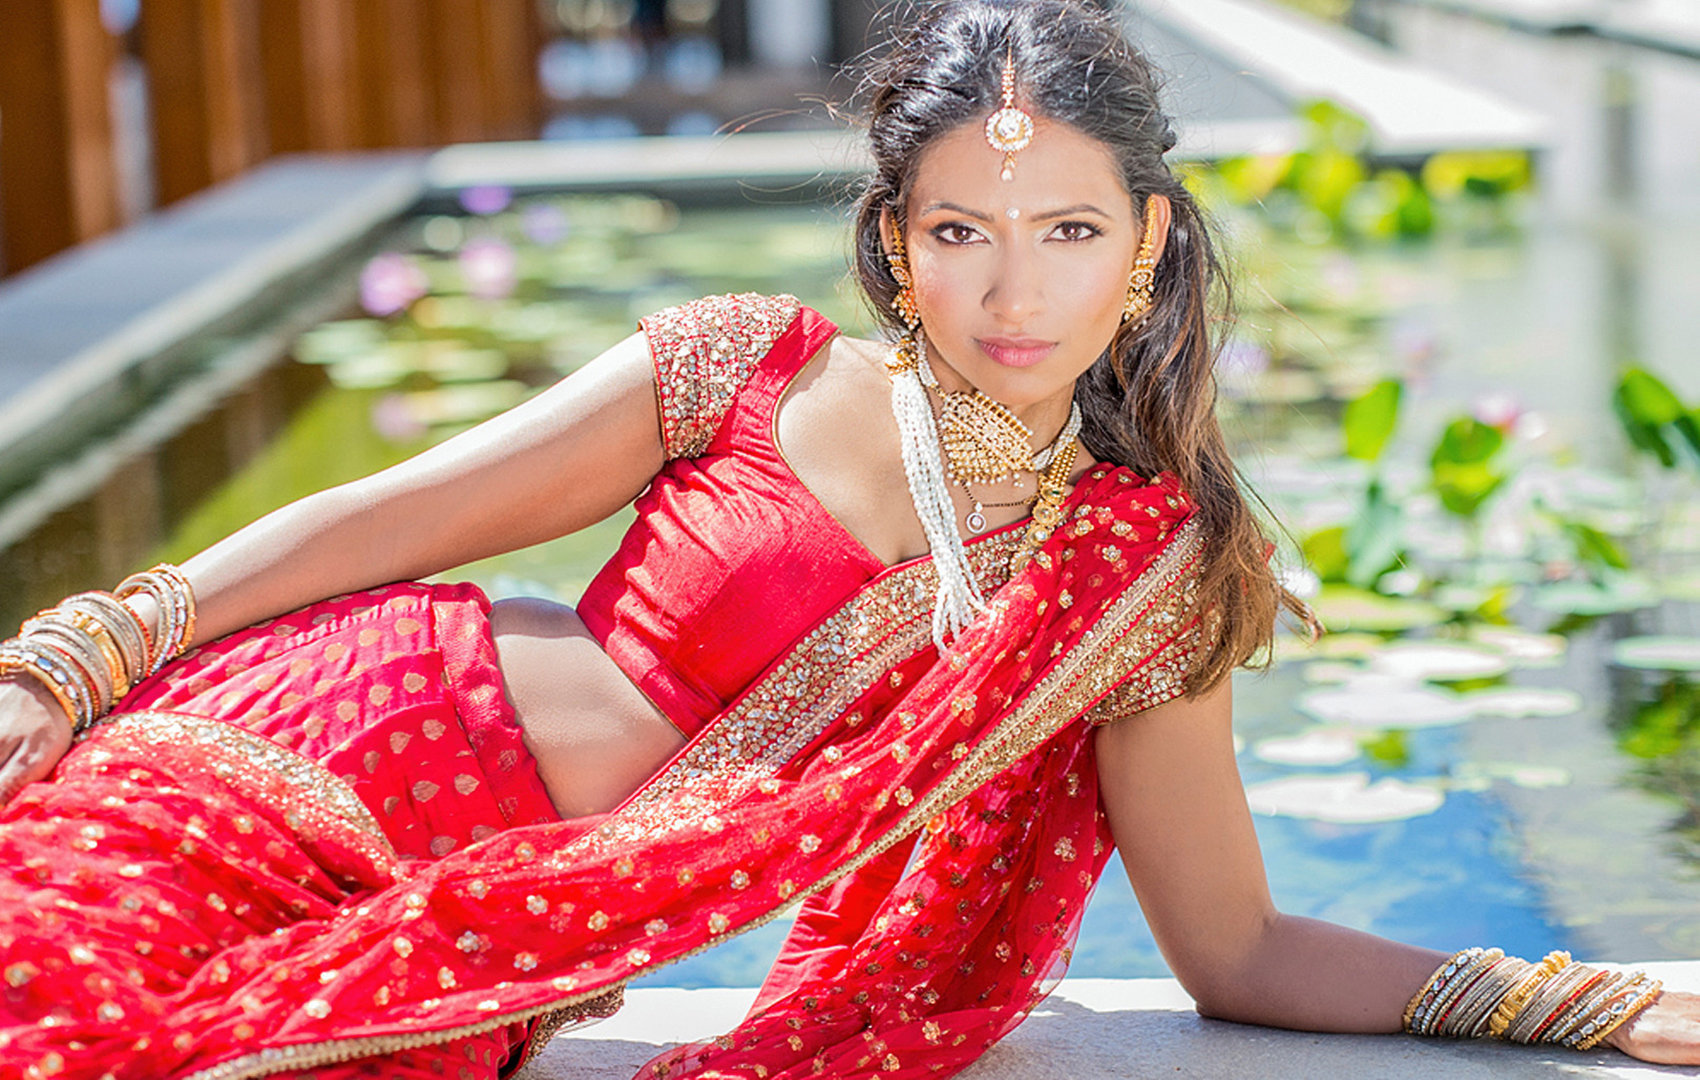 Indian wedding photographers on Maui | Kauai | Oahu | Big Island